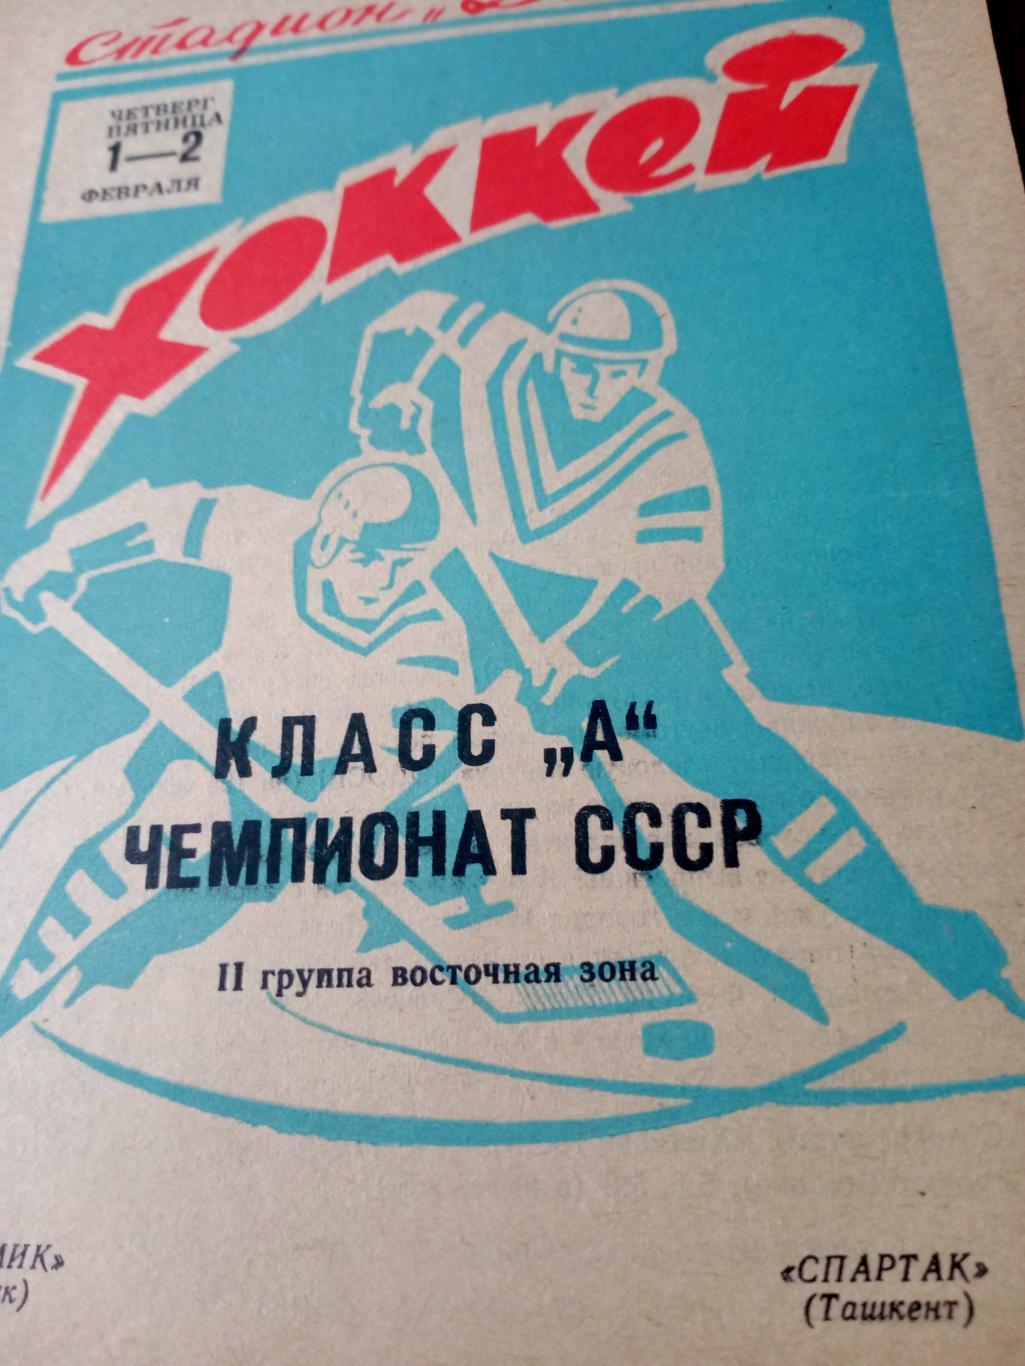 Химик Омск - Спартак Ташкент. 1 и 2 февраля 1973 год